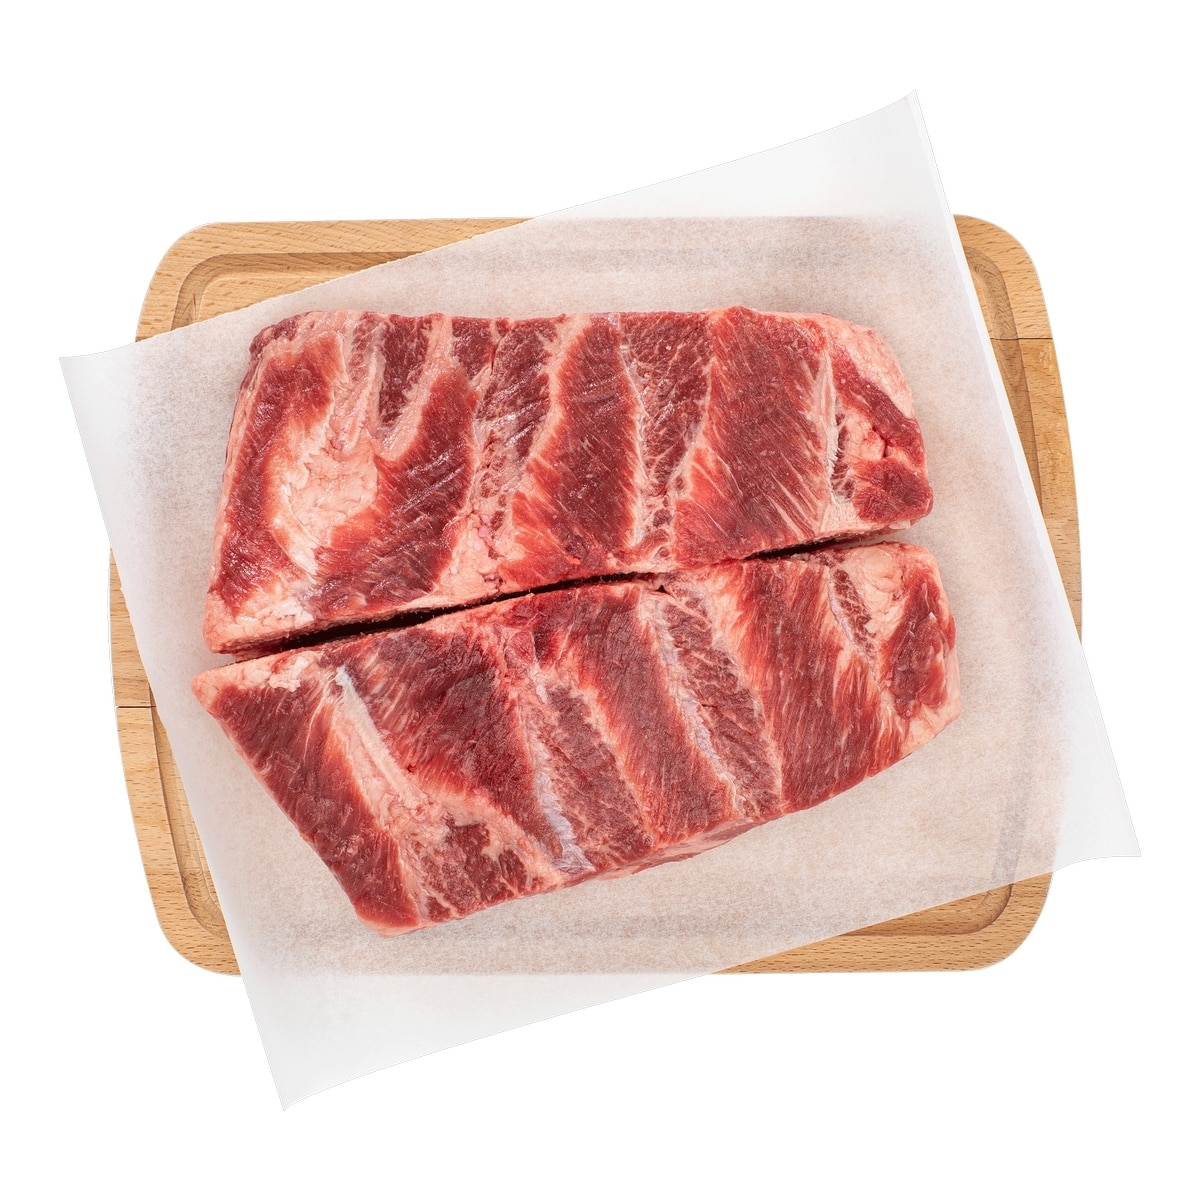 美國頂級冷凍翼板肉整箱銷售